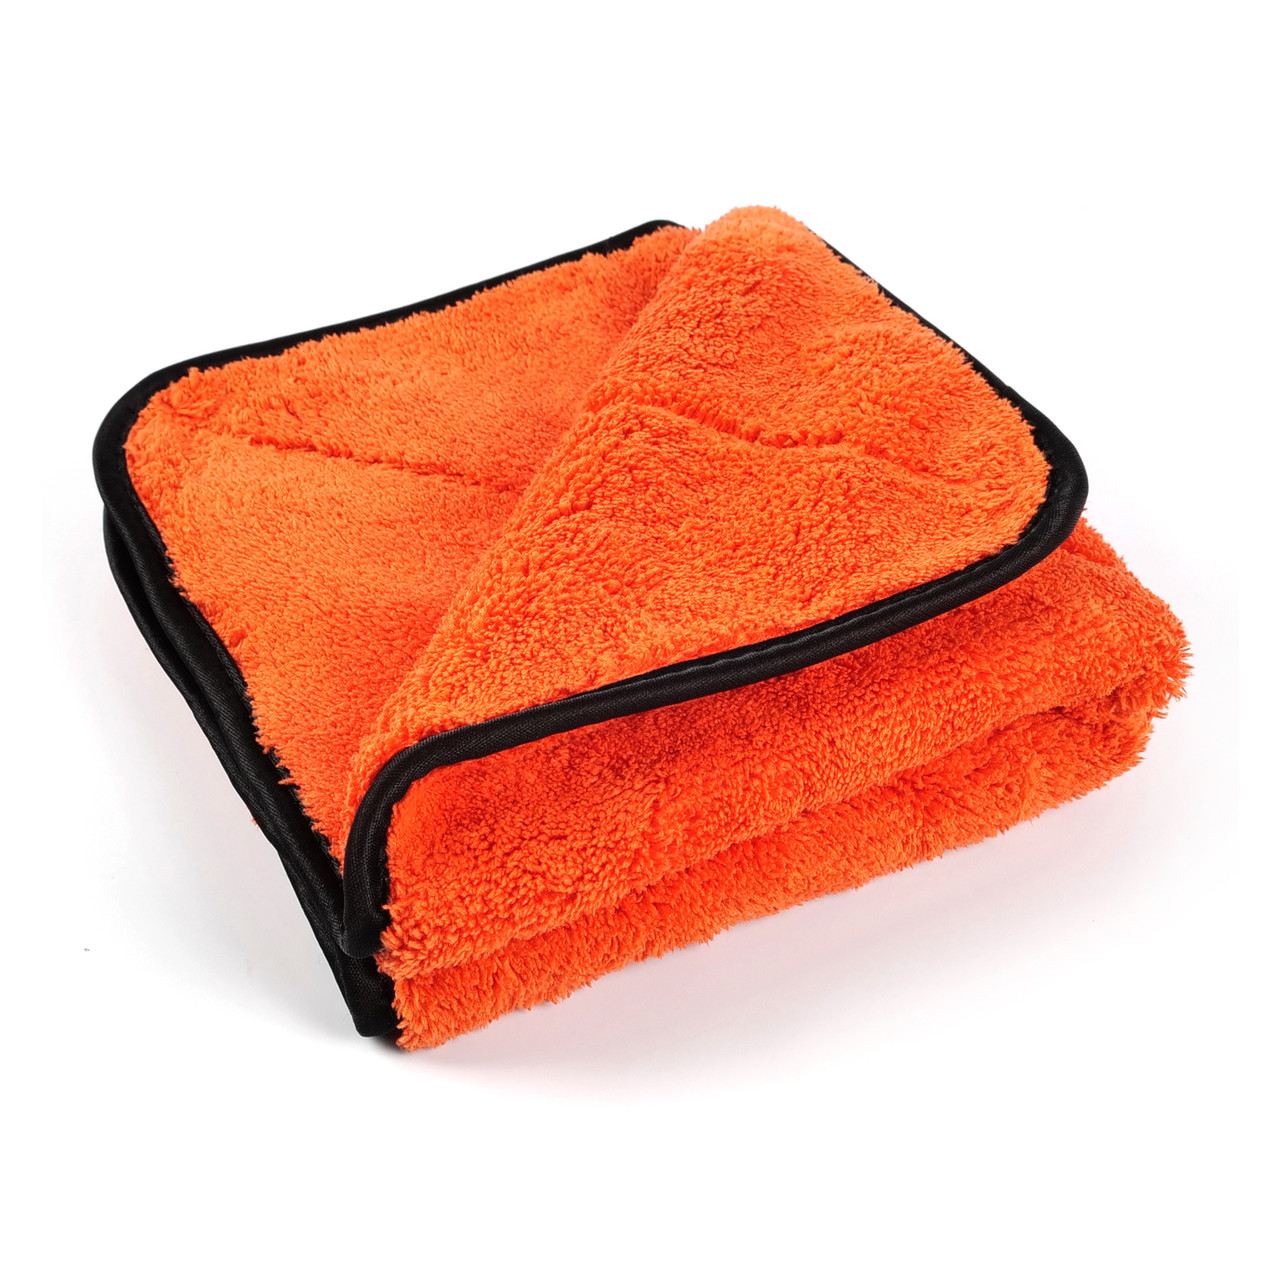 Рушник мікрофібровий для сушки - MaxShine Microfiber Drying Towel 40x40 см. 1000 gsm помаранчевий (1064040O)